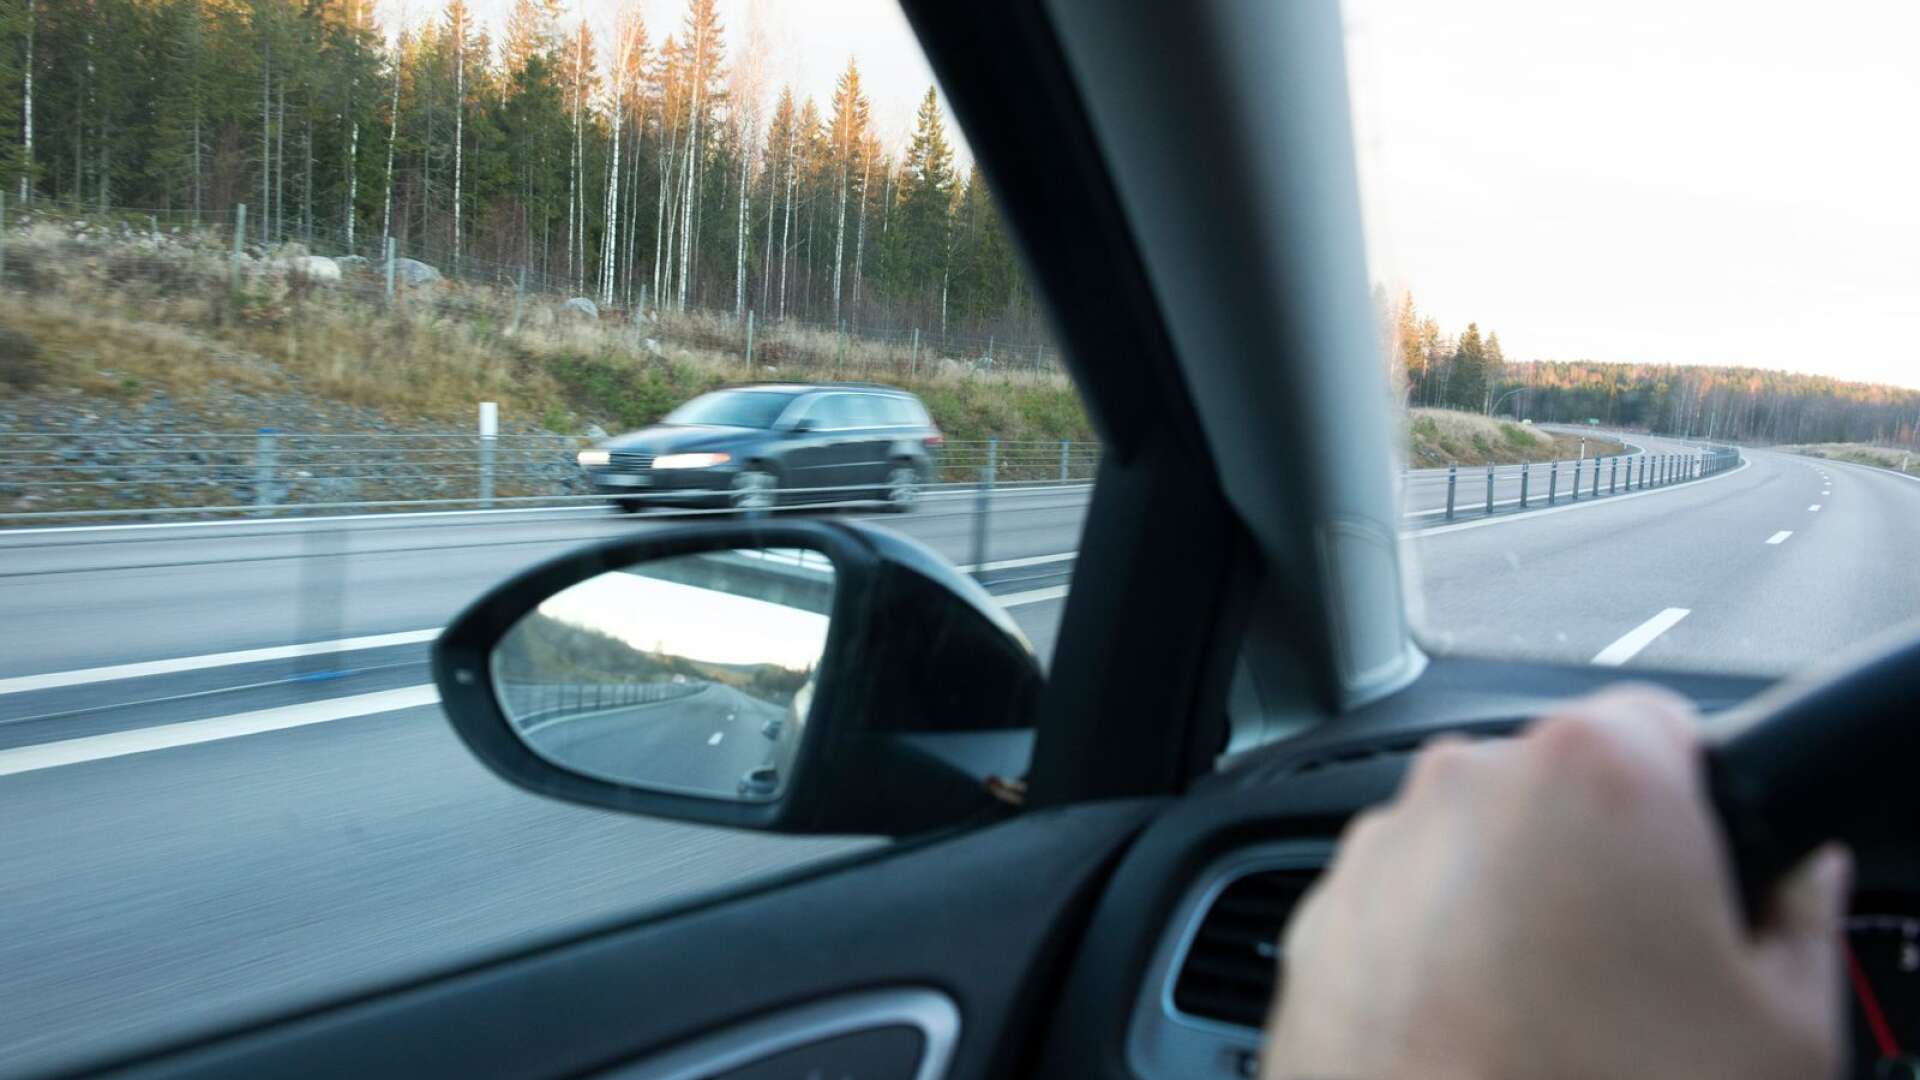 Det är väsentligt fler som tror att bilresande och biltransporter kommer att öka i framtiden än som tror de kommer att minska, skriver Anders Ydstedt.